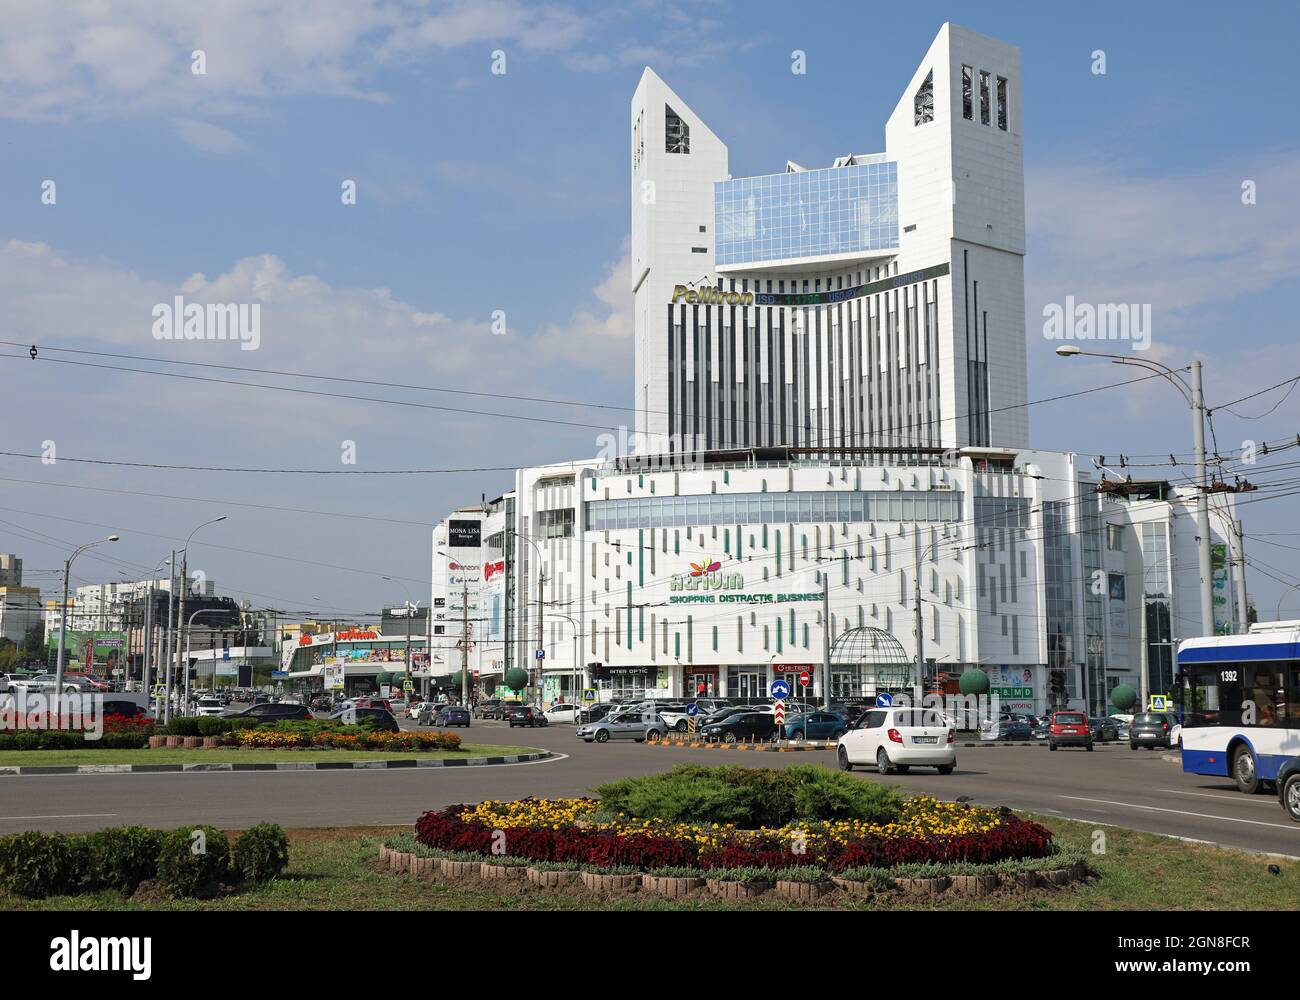 Atrium Shopping Centre in Chisinau Stock Photo